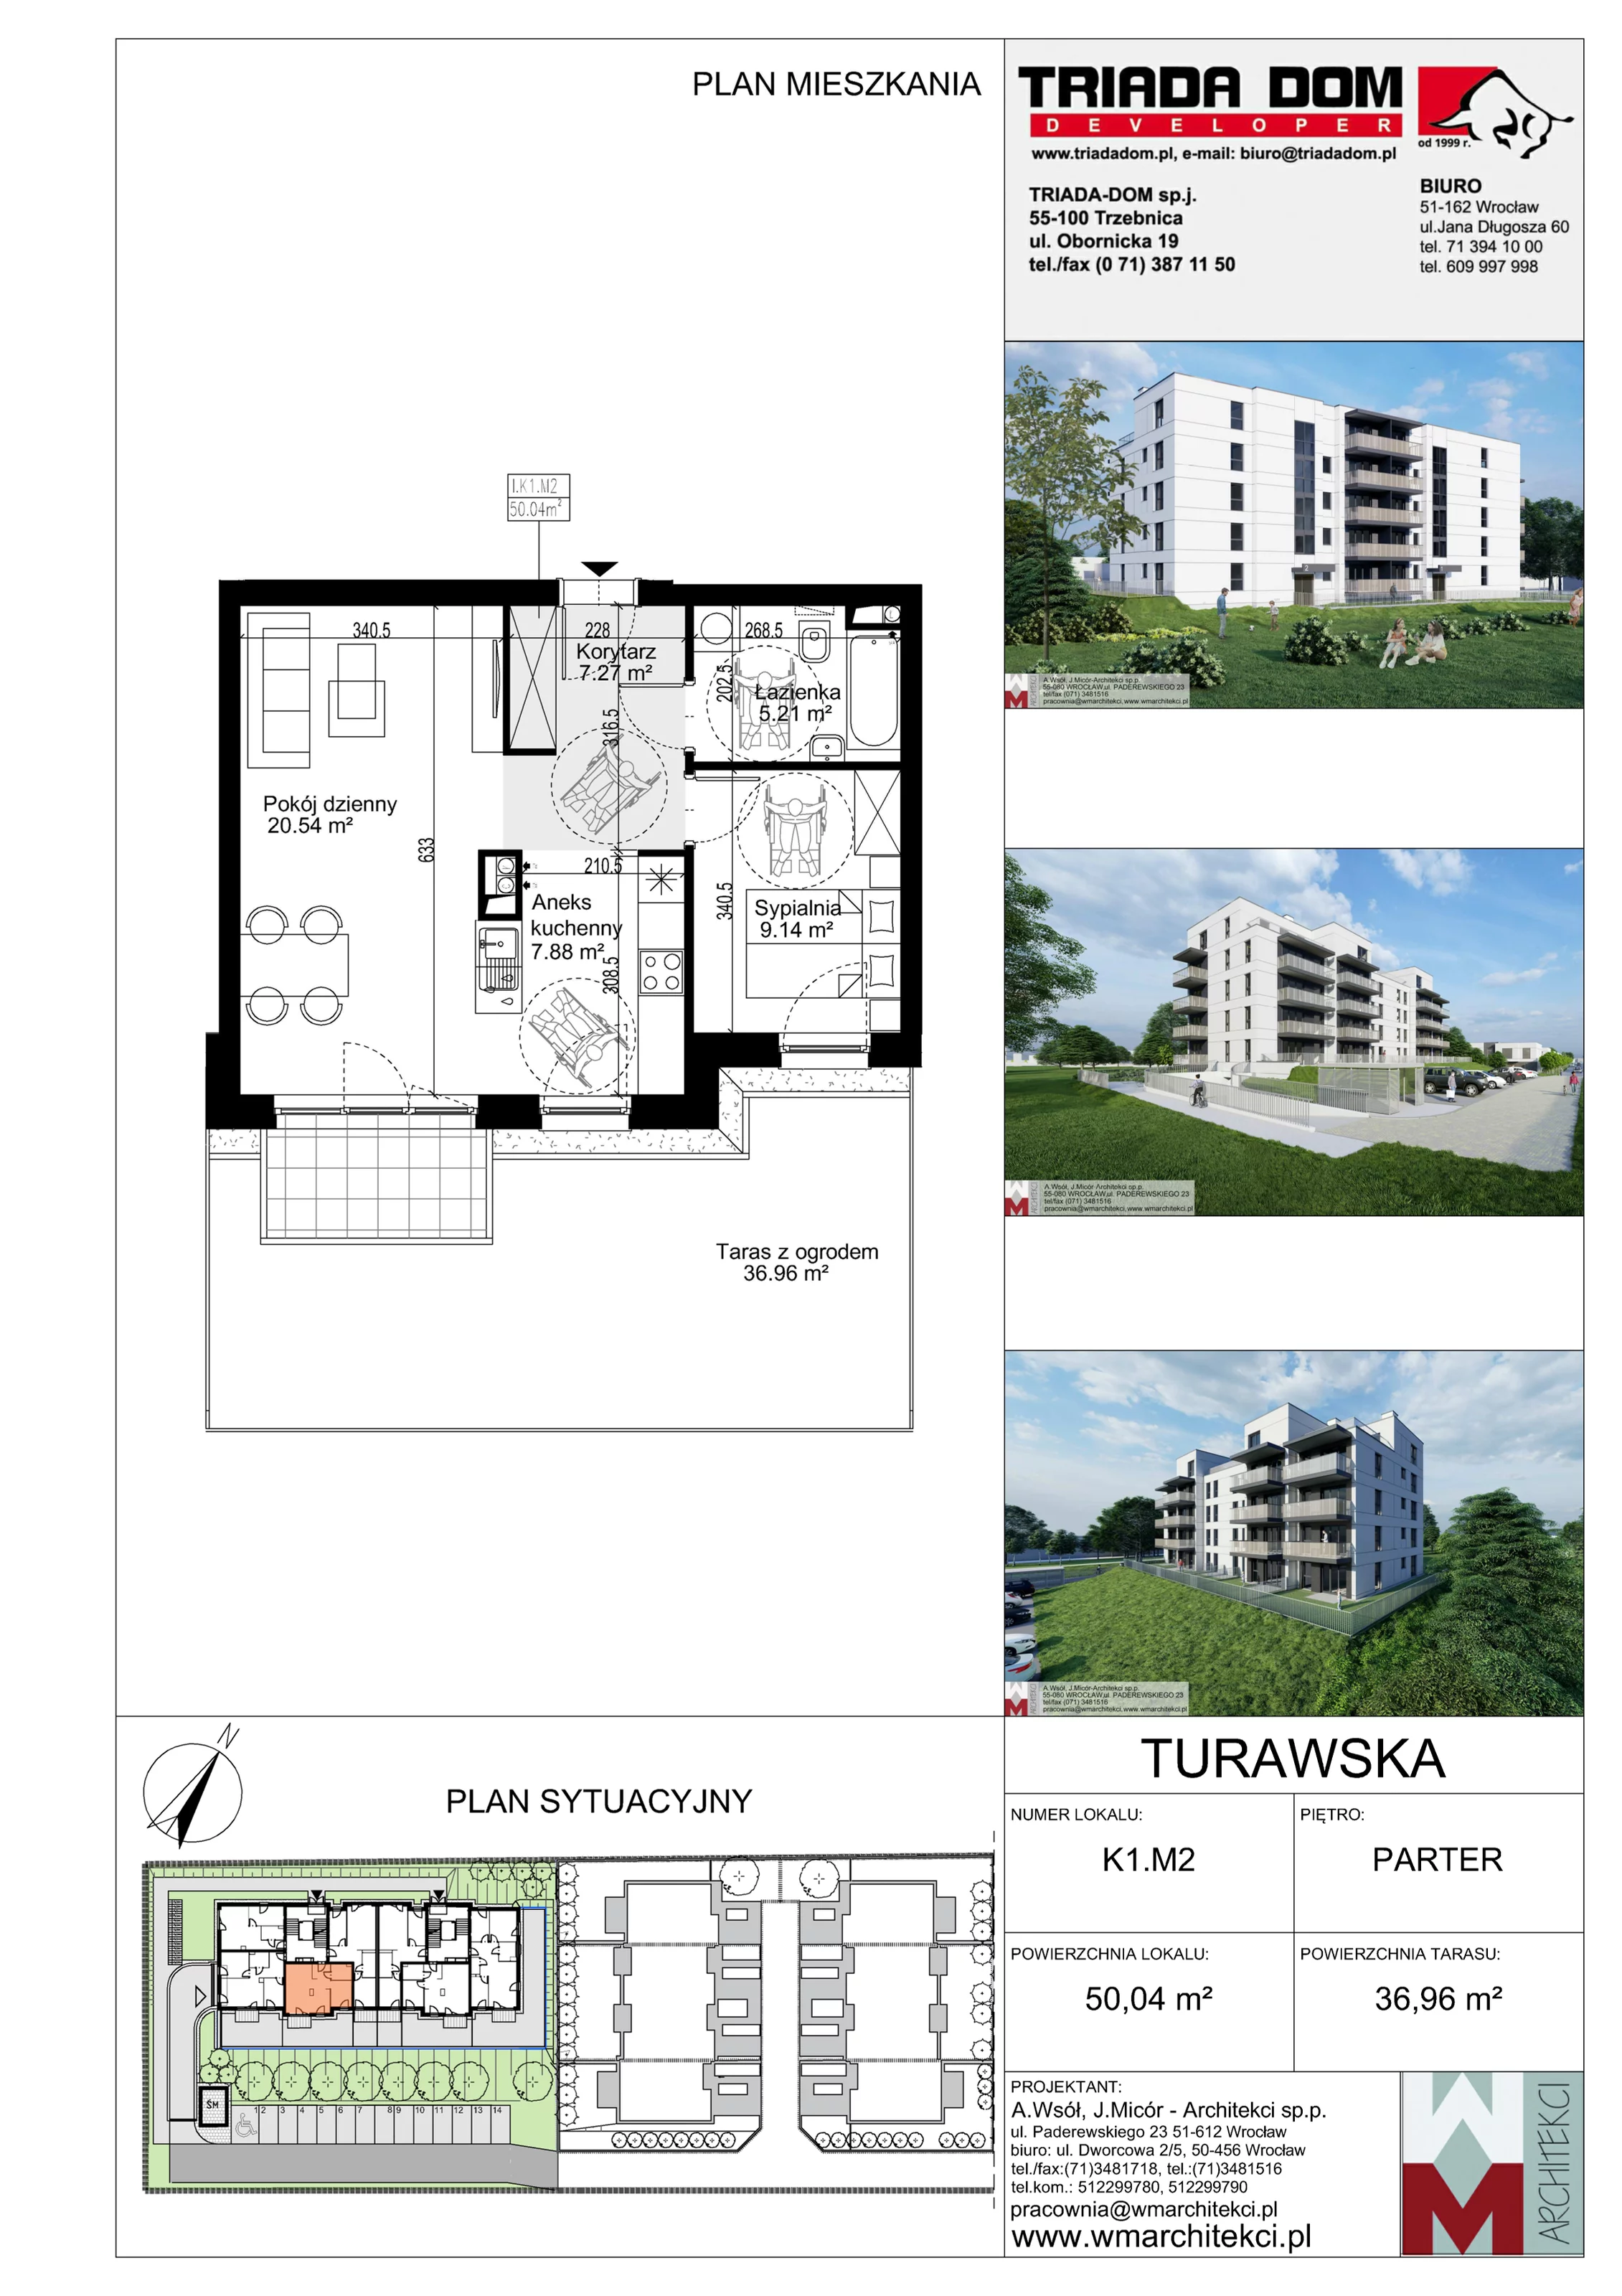 Mieszkanie 50,04 m², parter, oferta nr K1.M2, Ogrody Turawska, Wrocław, Księże, Krzyki, ul. Turawska 78